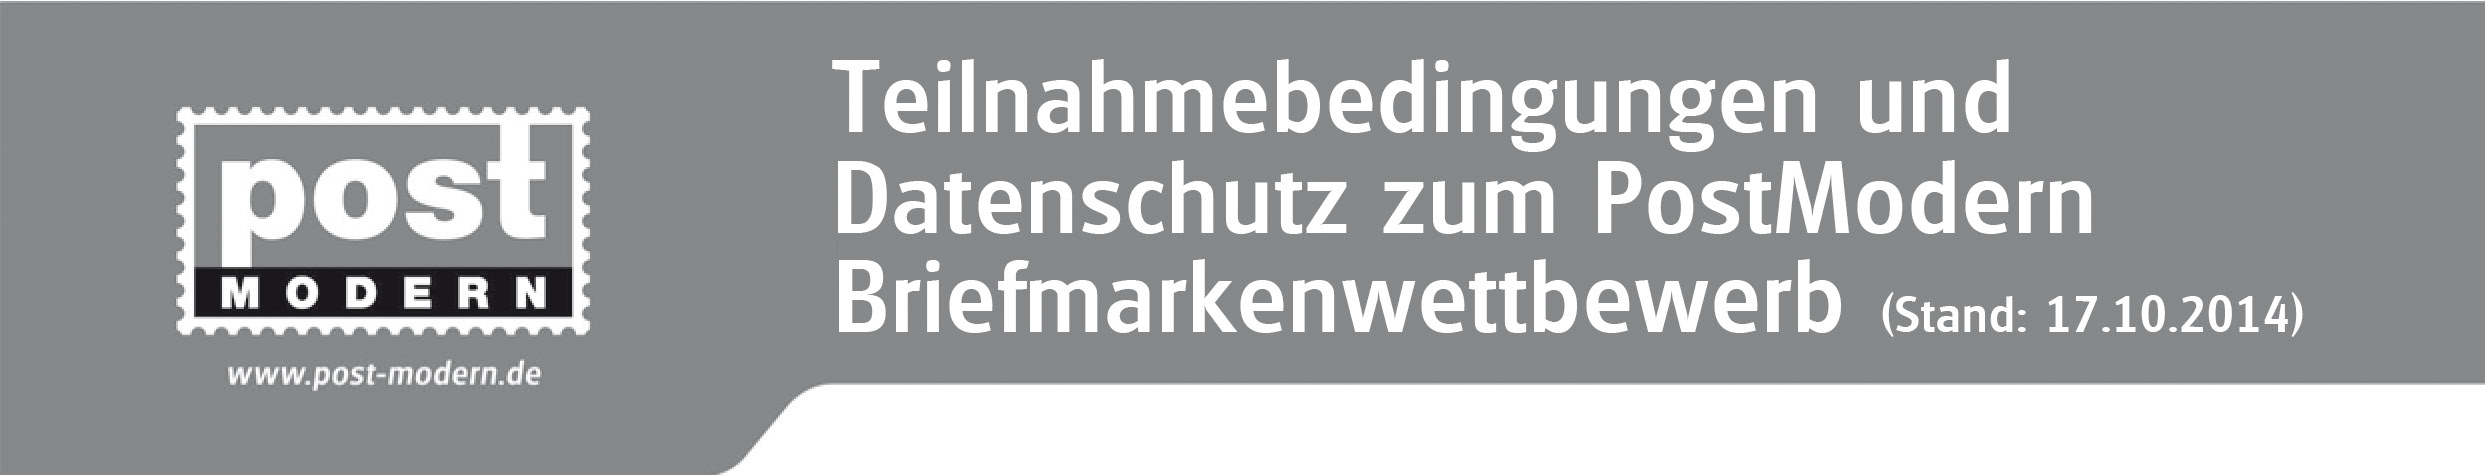 Die MEDIA Logistik GmbH, Meinholdstraße 2, 01129 Dresden, nachfolgend PostModern genannt, ist der Veranstalter des Briefmarkenwettbewerbs. Mit dem Upload seines Beitrags in Form eines Fotos bzw.